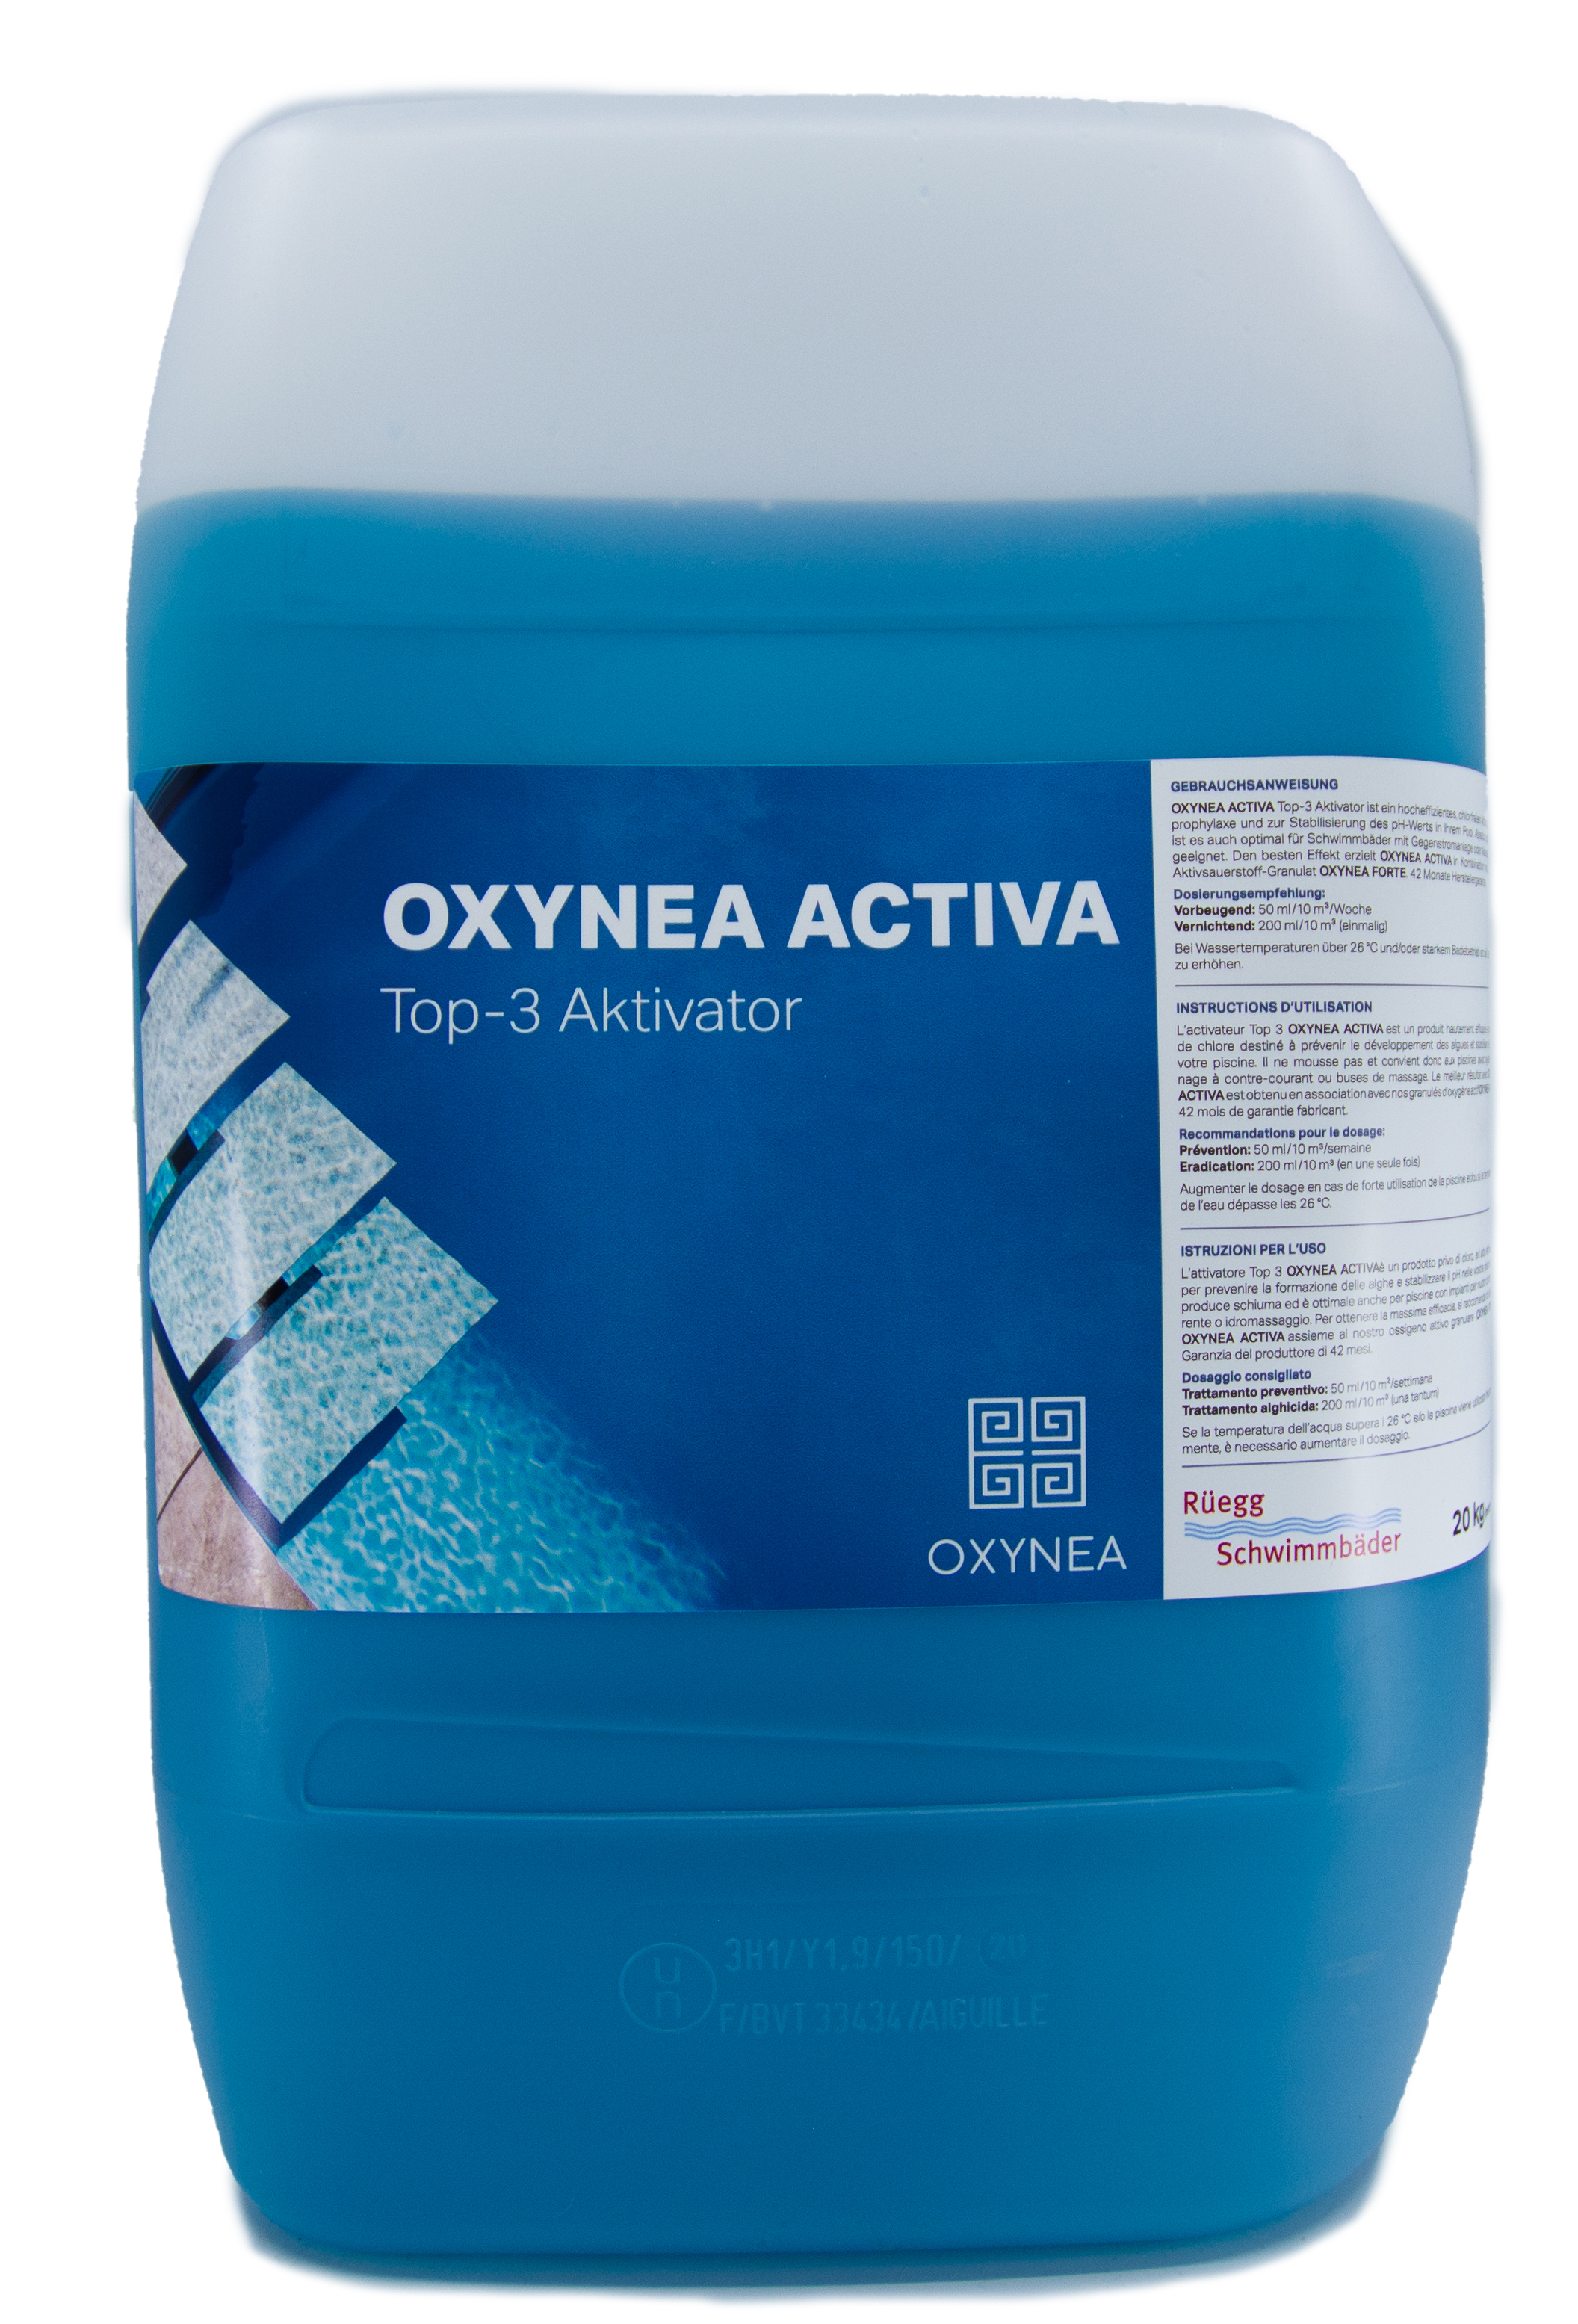 OXYNEA Activa Top 3 - Aktivator, 20 kg